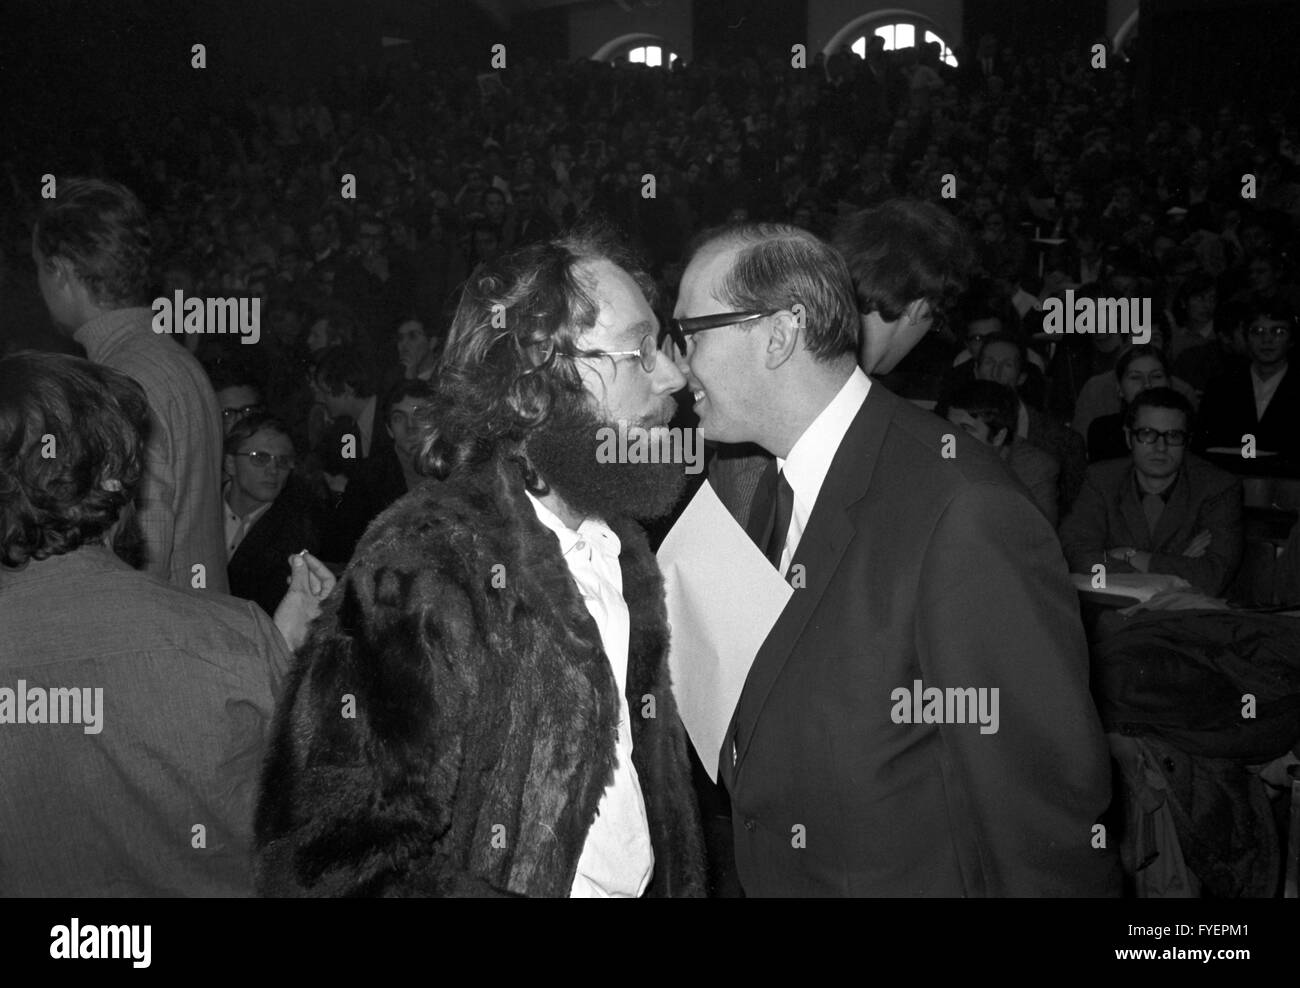 Le fédéré Fritz Teufel (l) et l'avocat Horst Mahler (r) dans la salle de conférences surpeuplés Université de Munich au cours d'un séminaire le 08 novembre 1968. Banque D'Images